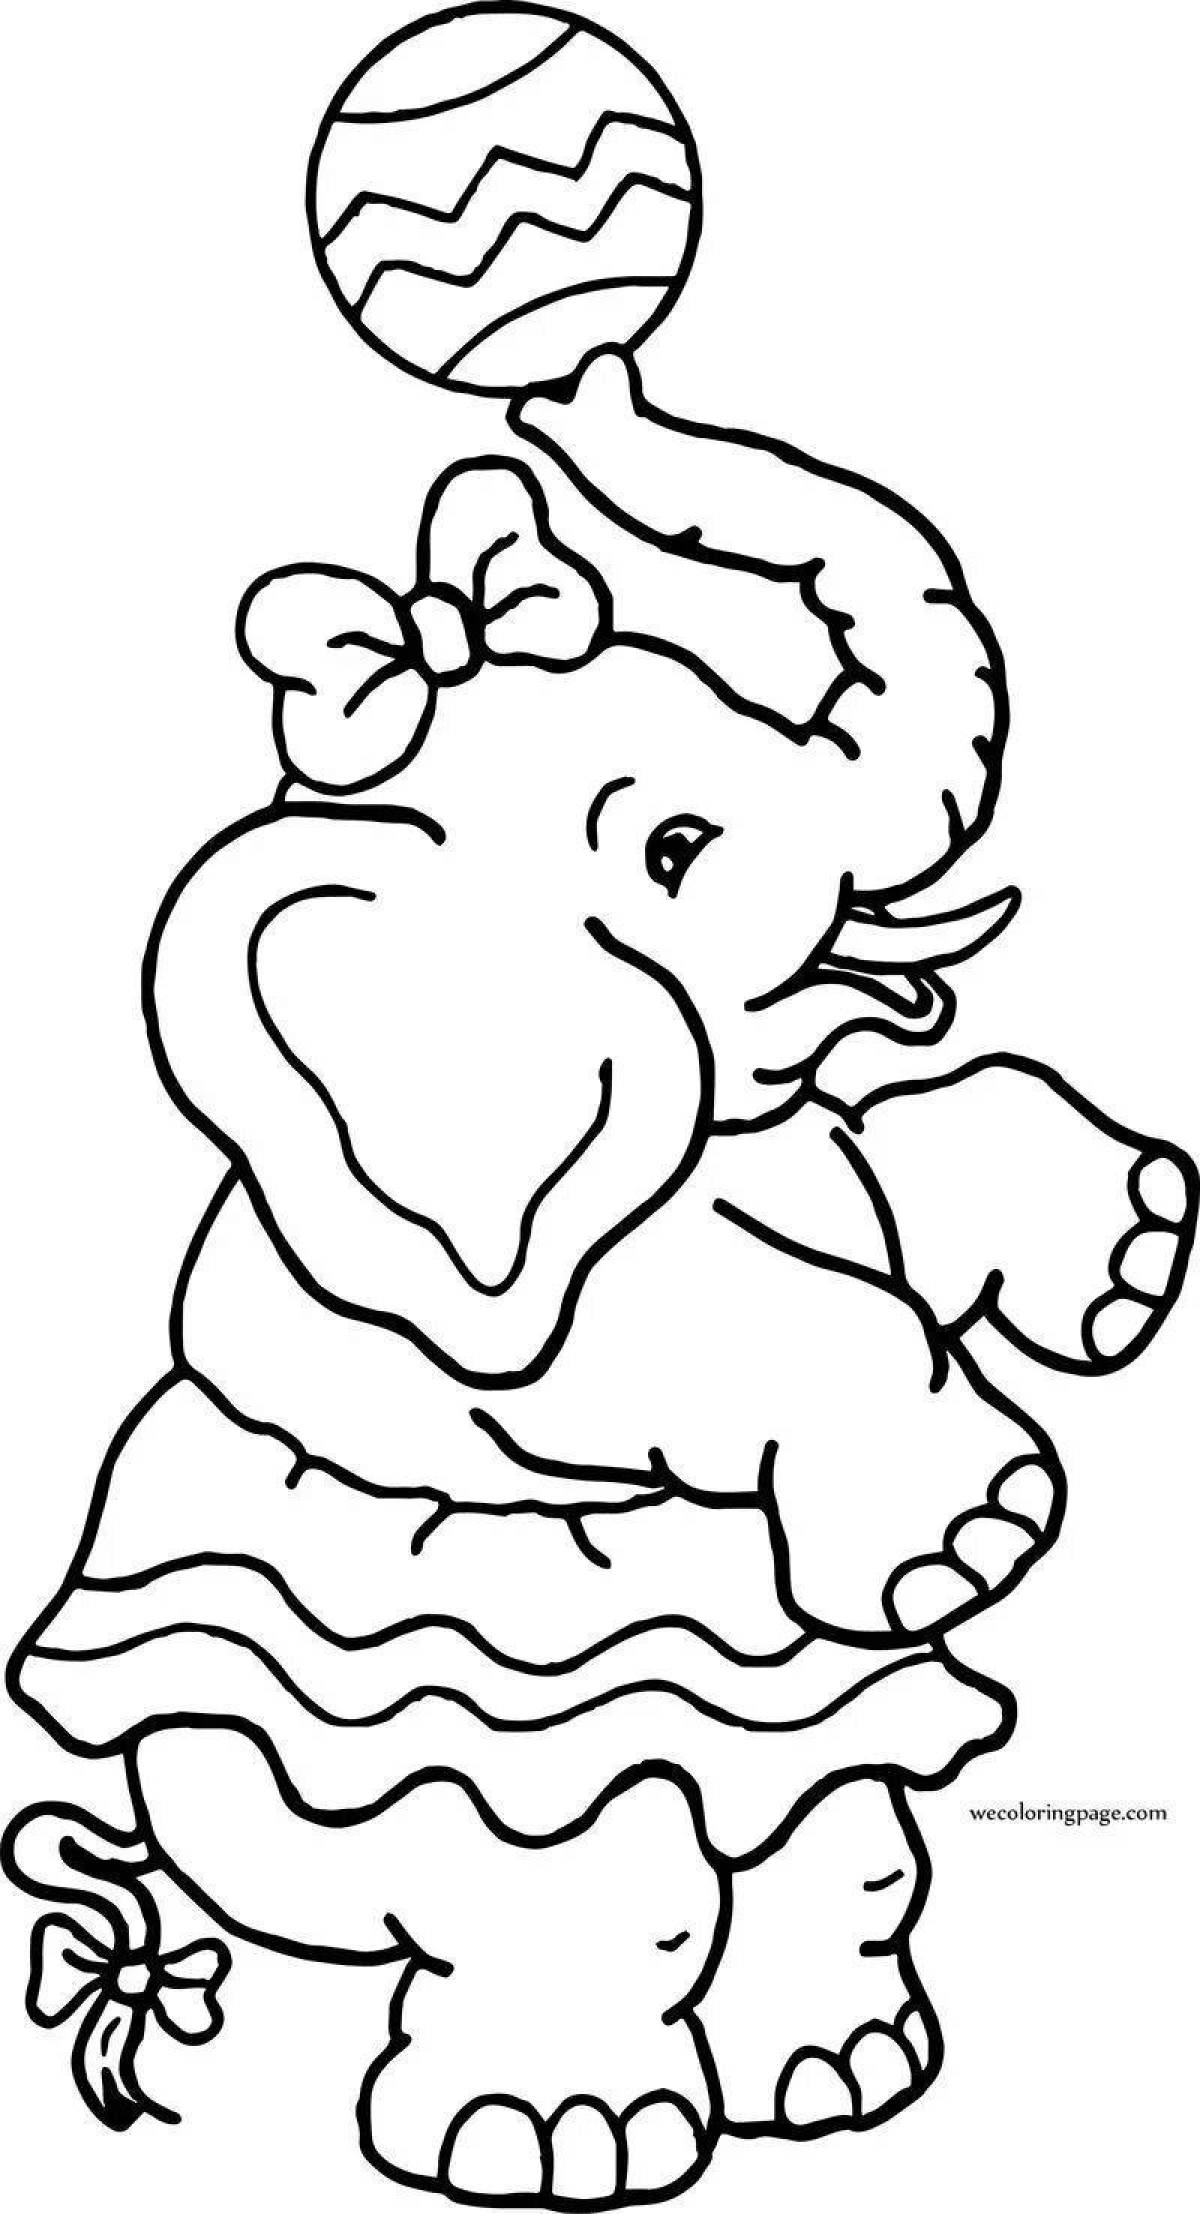 Впечатляющая страница раскраски циркового слона